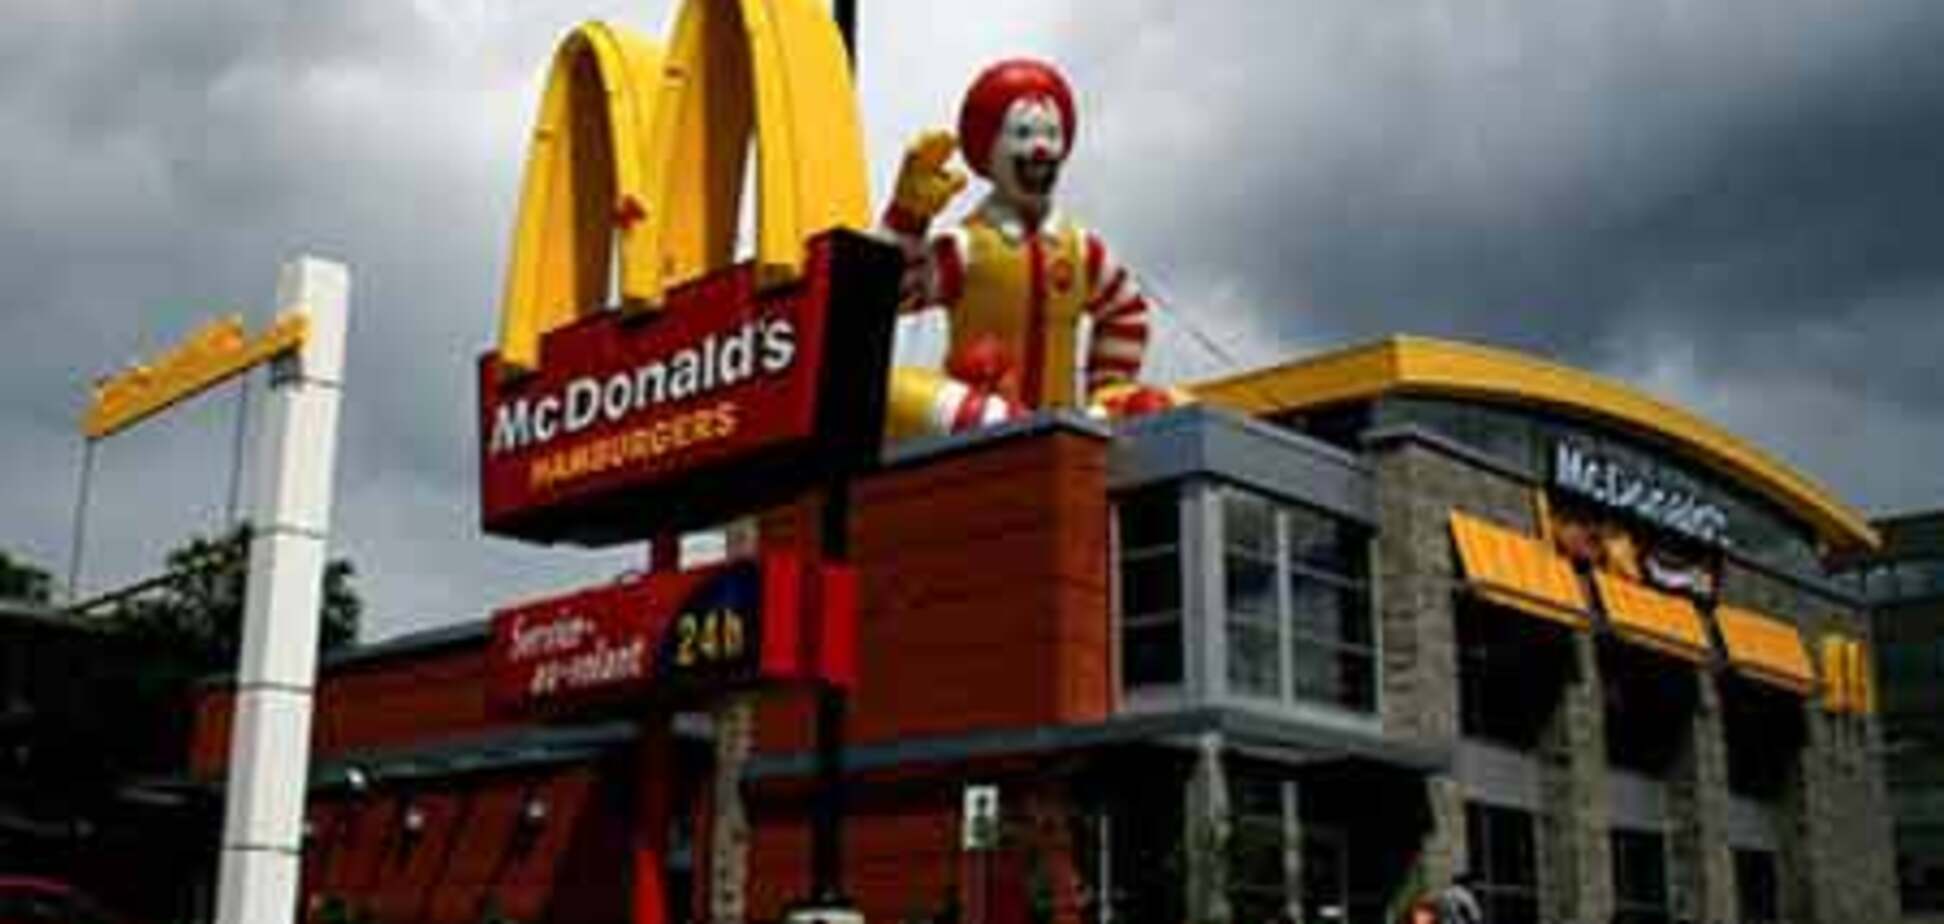 Исландия останется без McDonald's
 